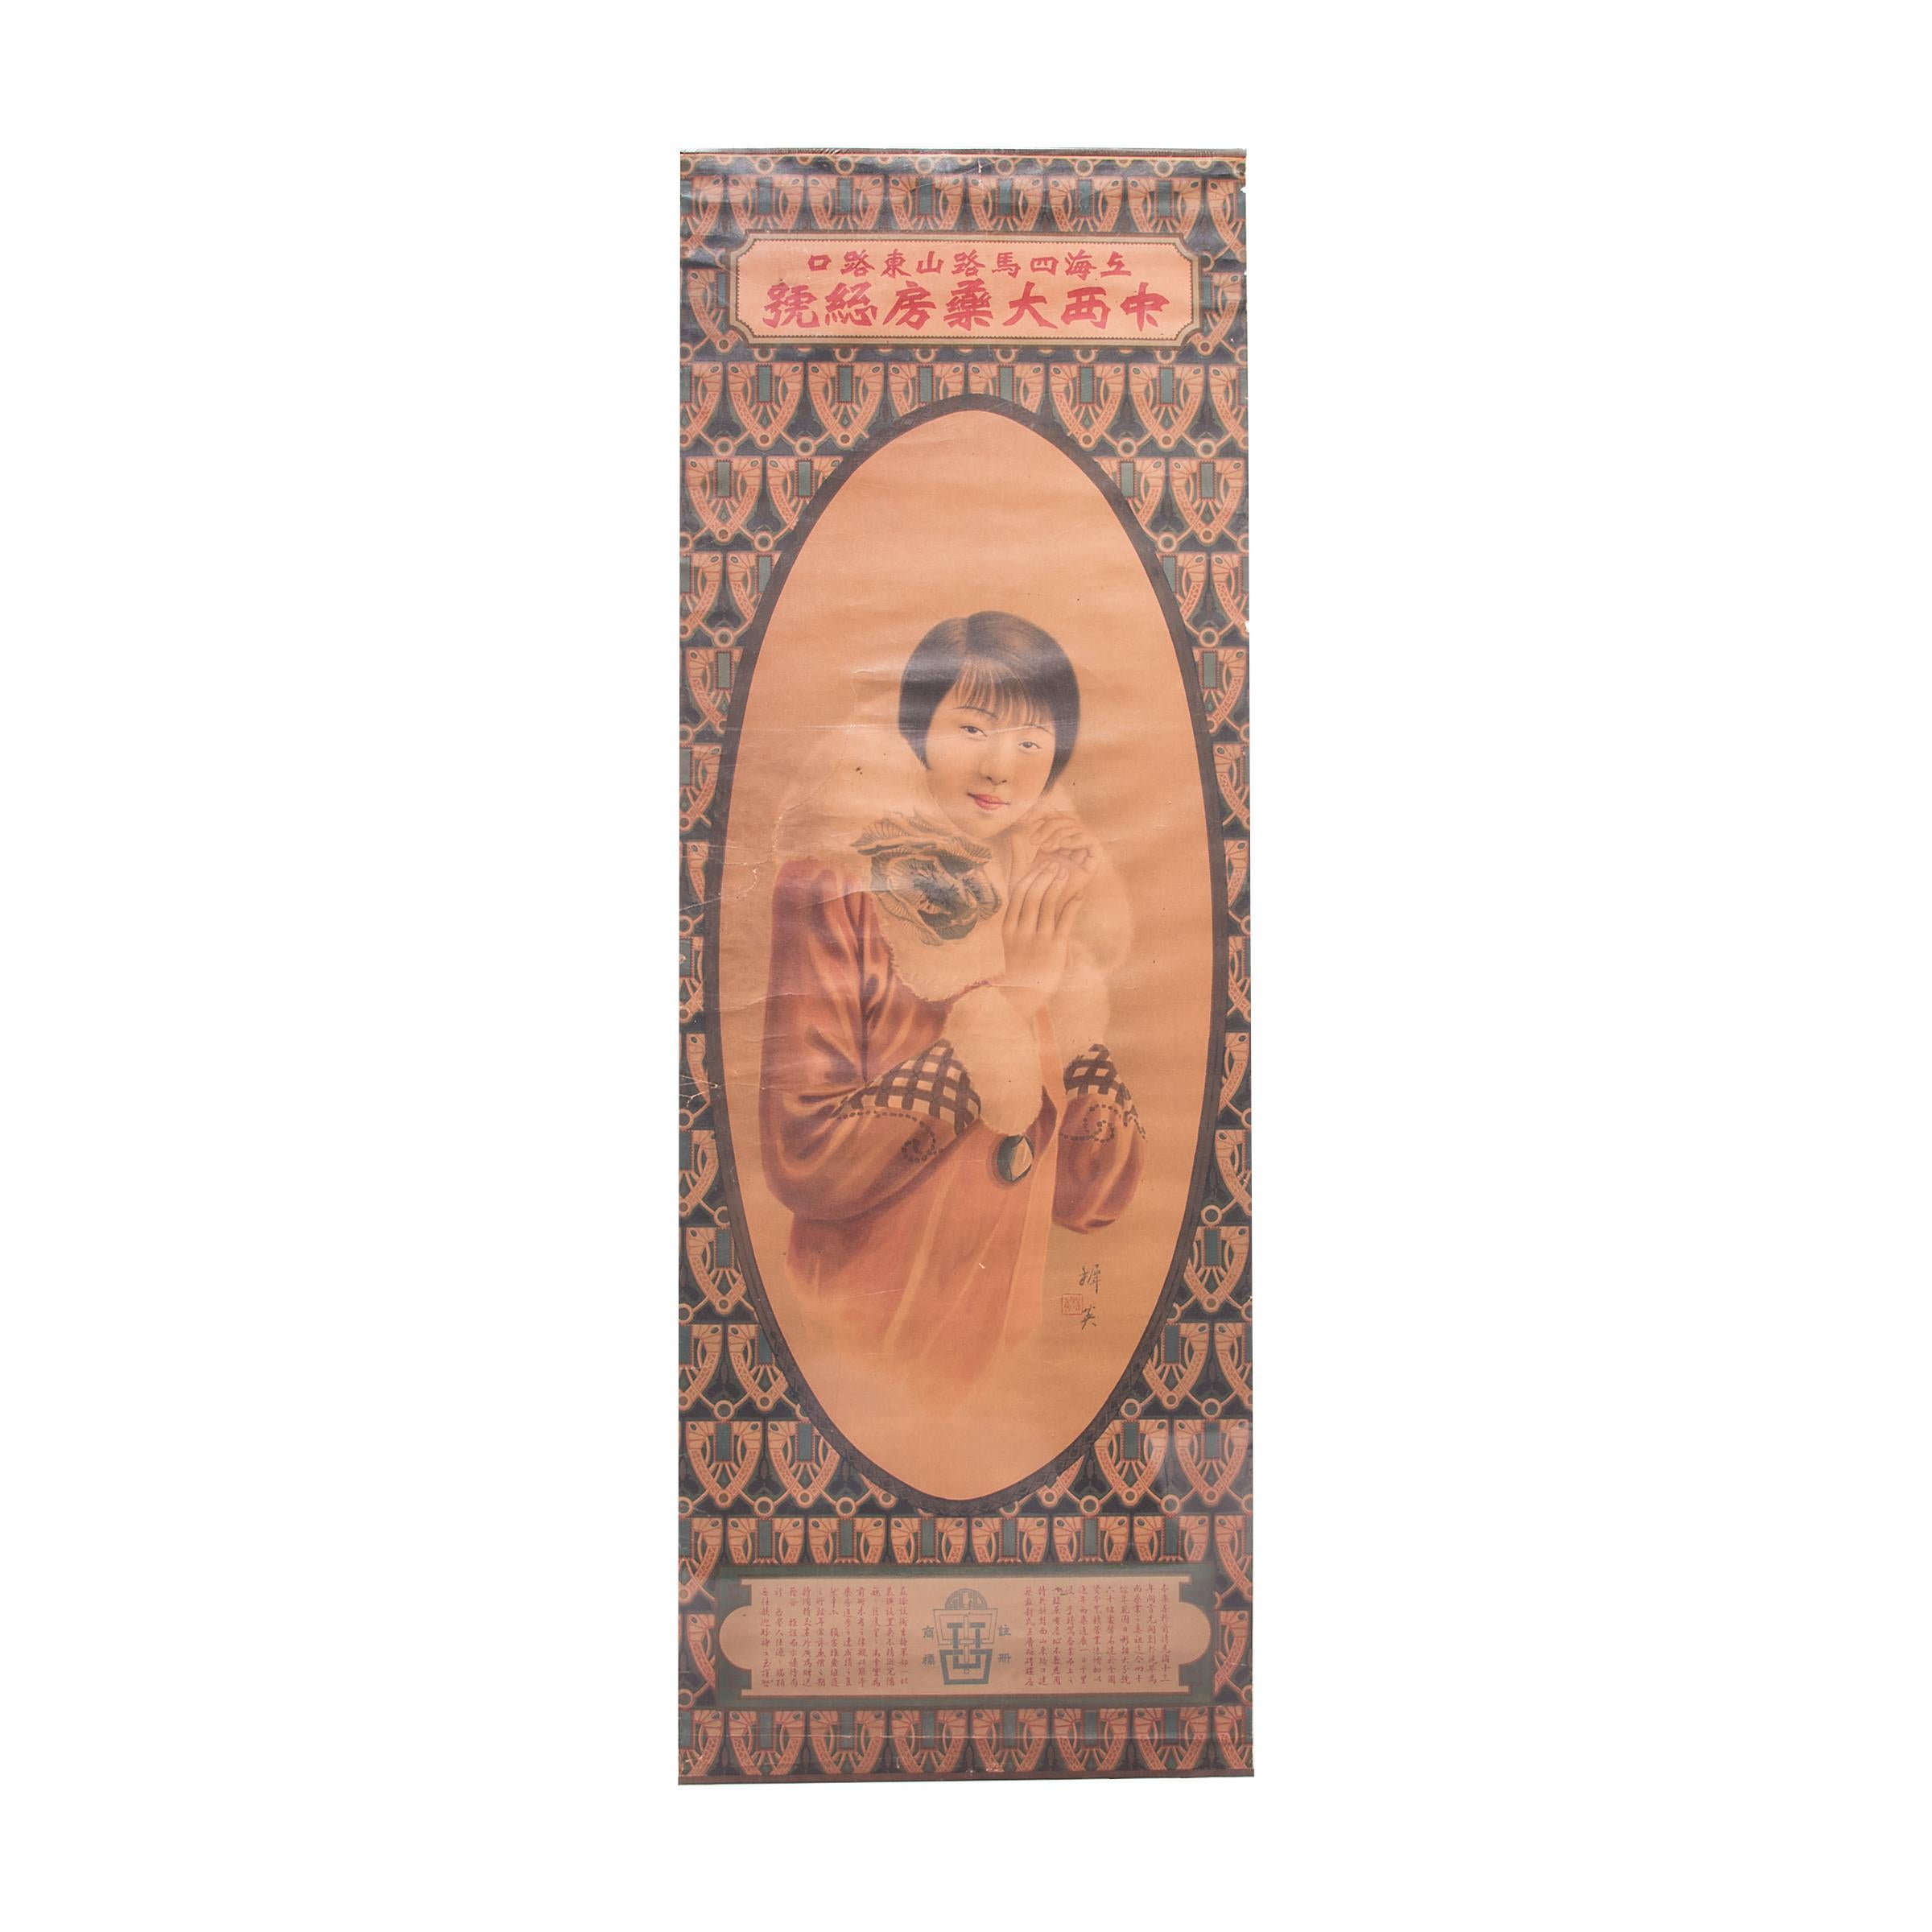 Unknown Figurative Print – Chinesisches und westliches Apotheken-Werbeplakat, um 1920